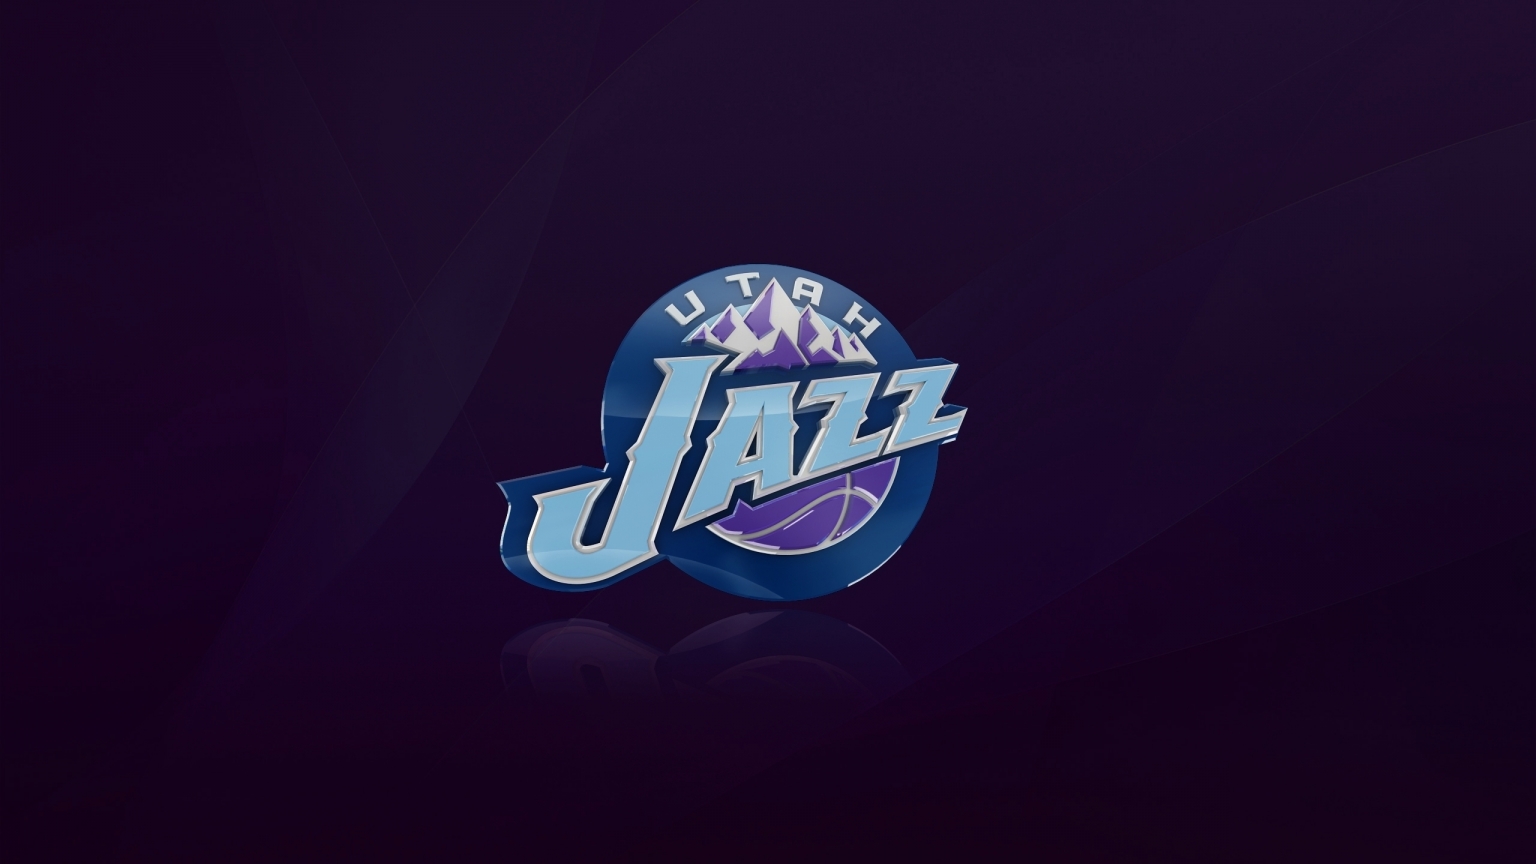 Utah Jazz Logo for 1536 x 864 HDTV resolution